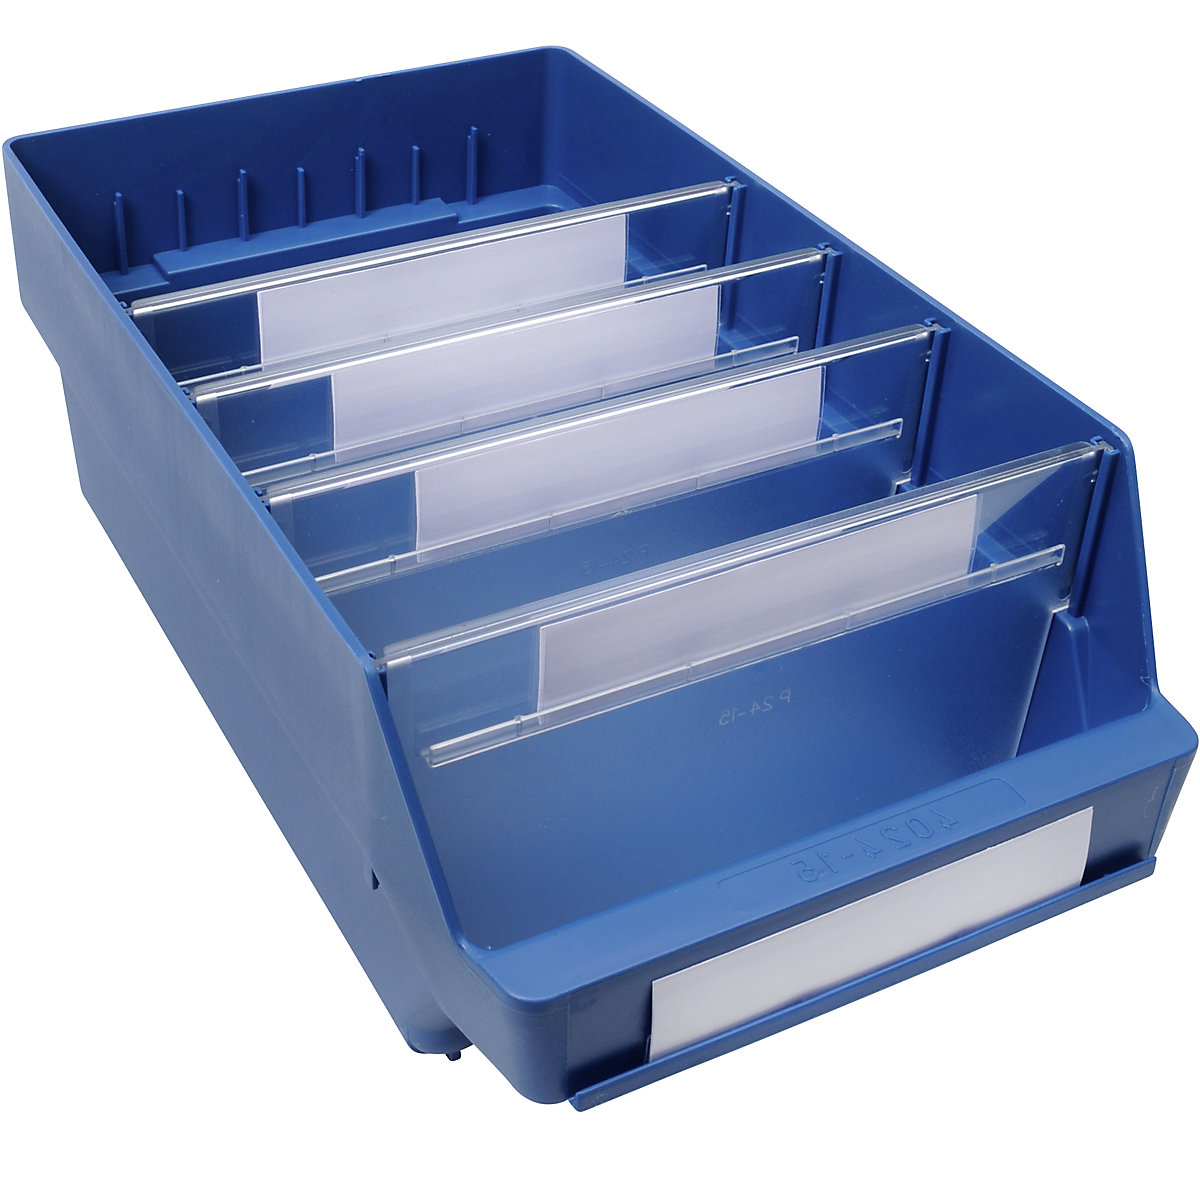 STEMO Regalkasten aus hochschlagfestem Polypropylen, blau, LxBxH 400 x 240 x 150 mm, VE 10 Stk